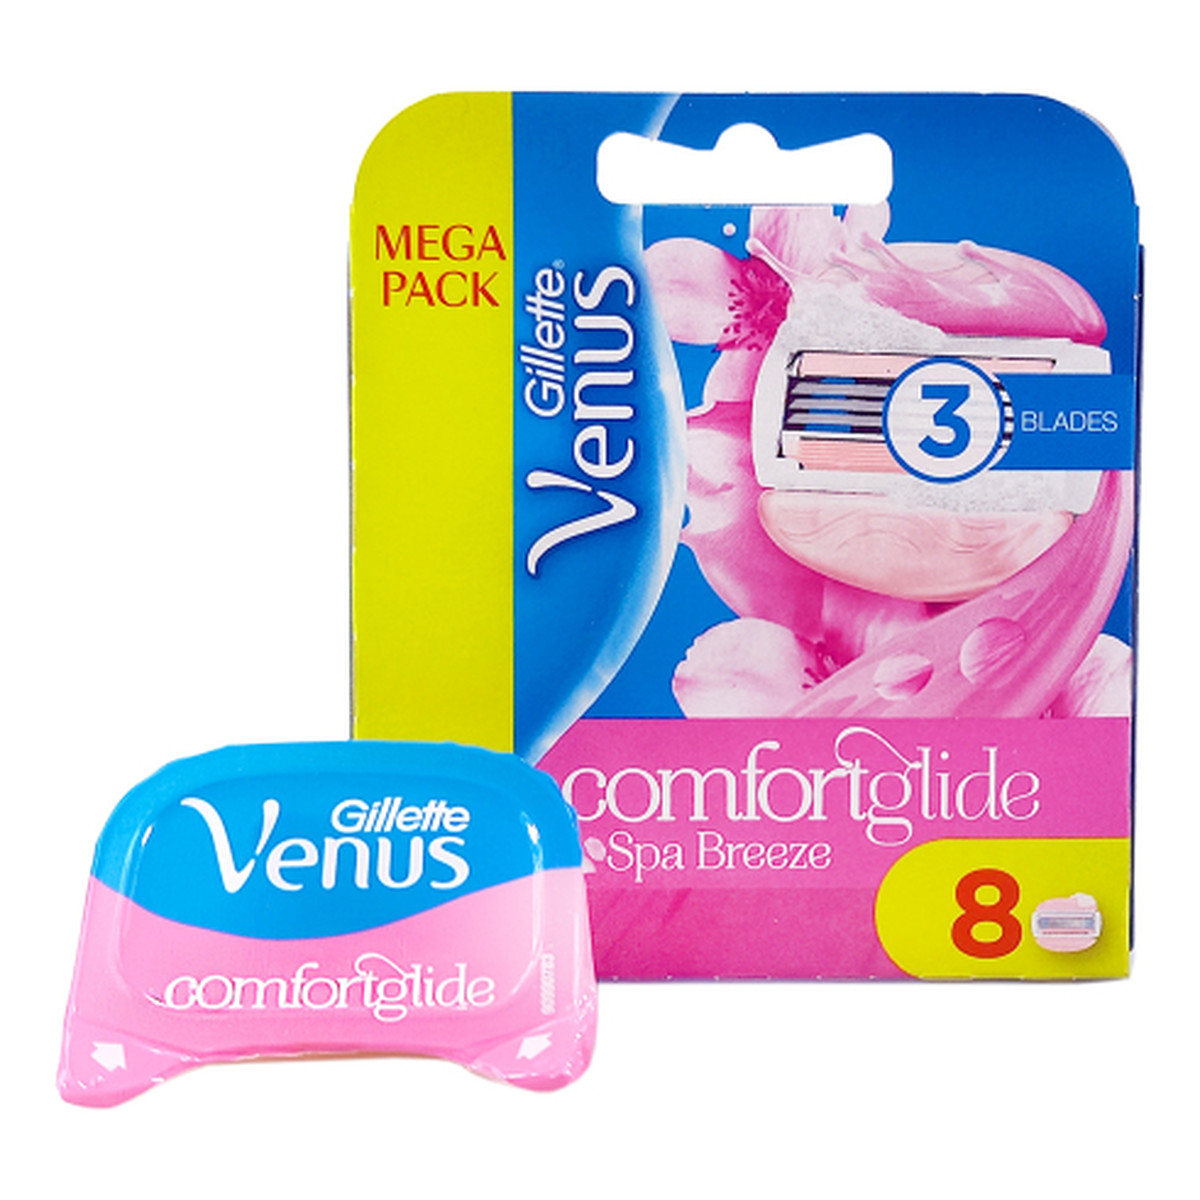 Gillette Venus Ostrza wymienne do maszynki do golenia Comfortglide SPA Breeze 8szt.